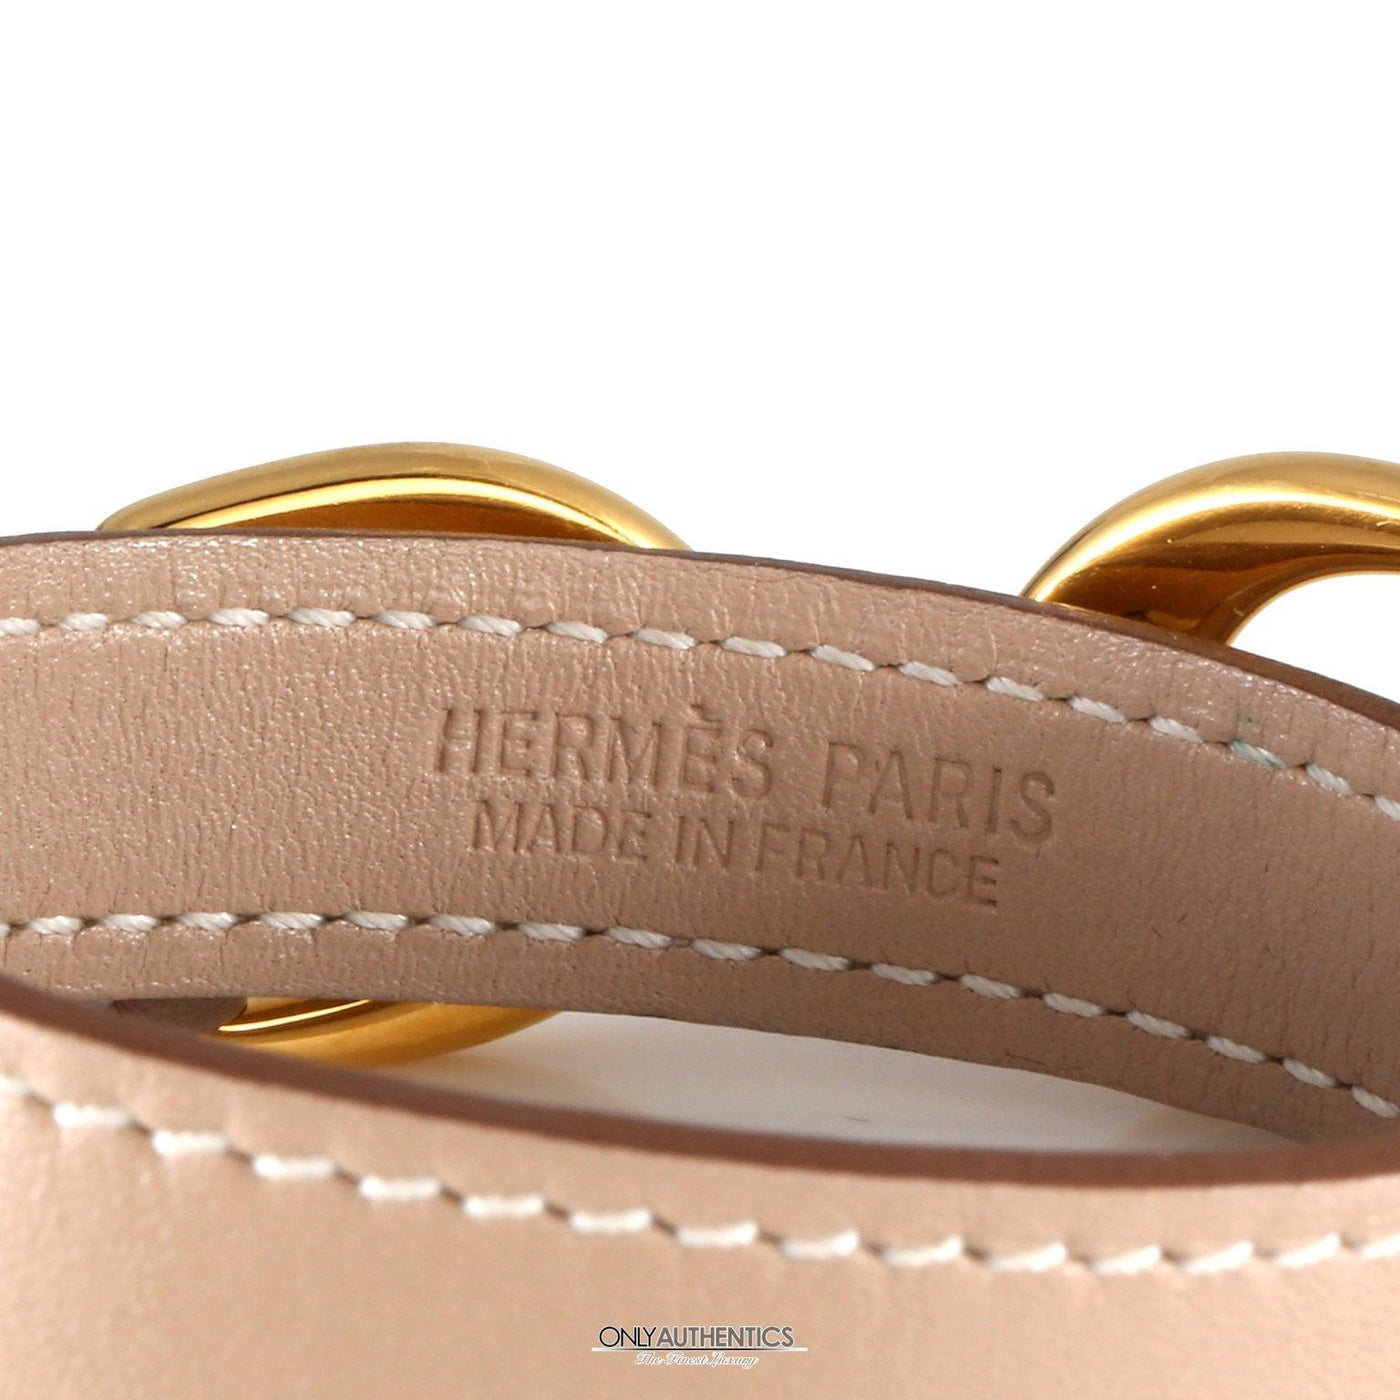 Hermès Pavane Double Tour Bracelet - Only Authentics